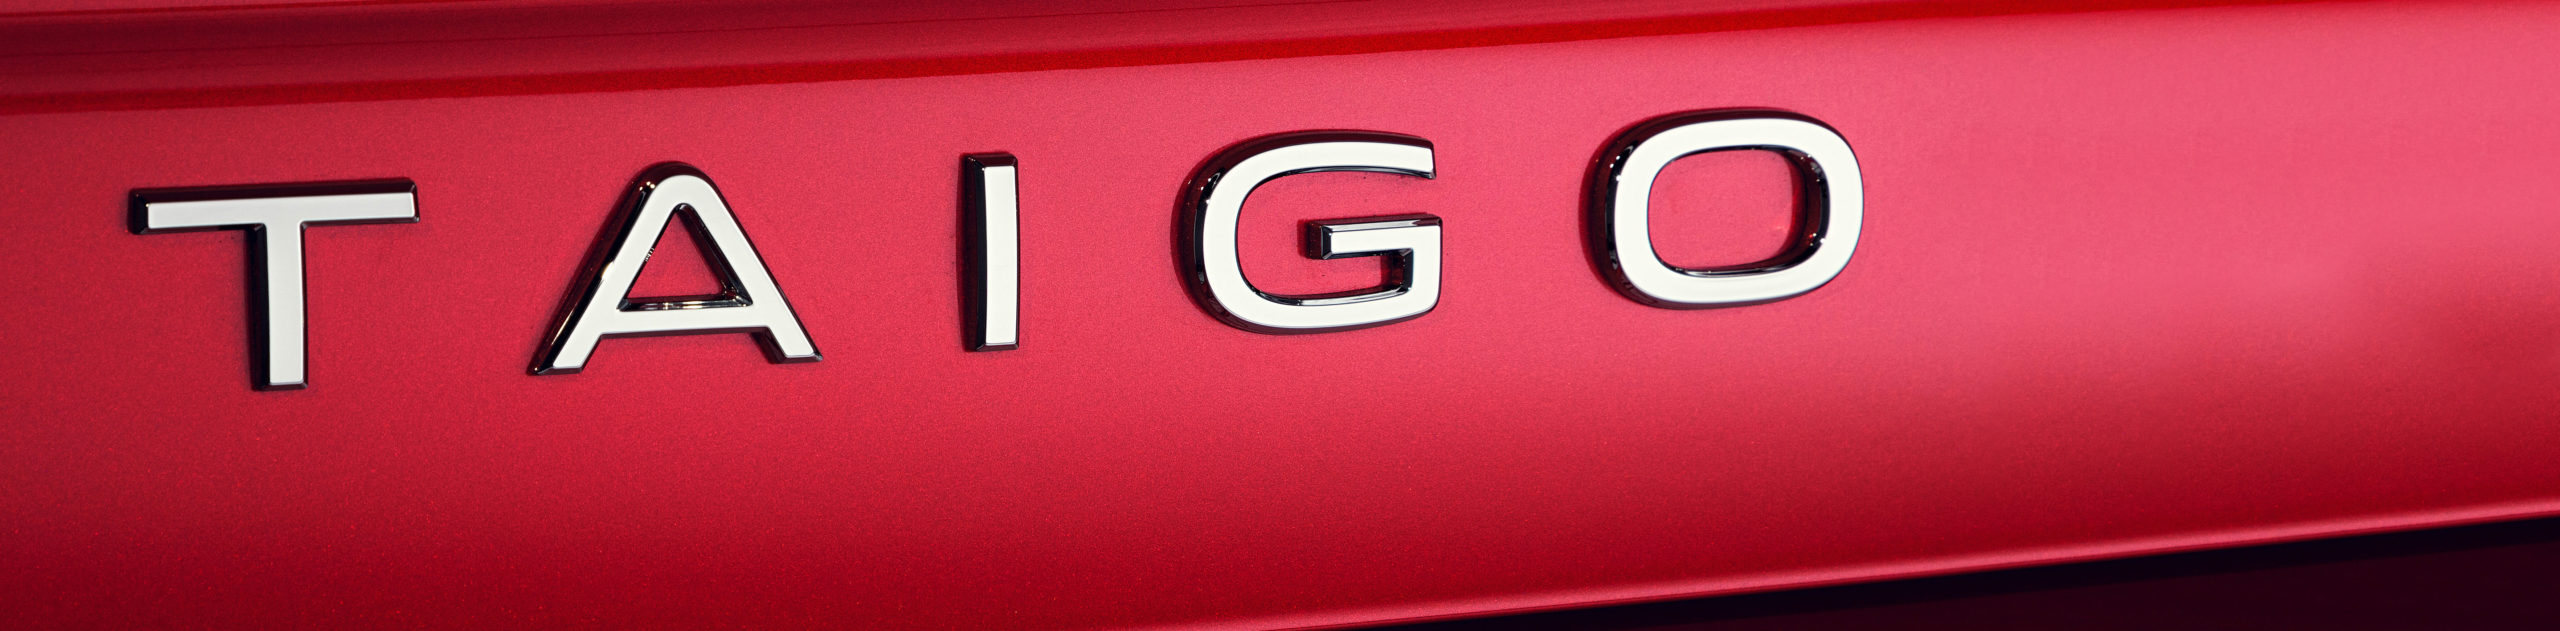 Presentación Volkswagen Taigo